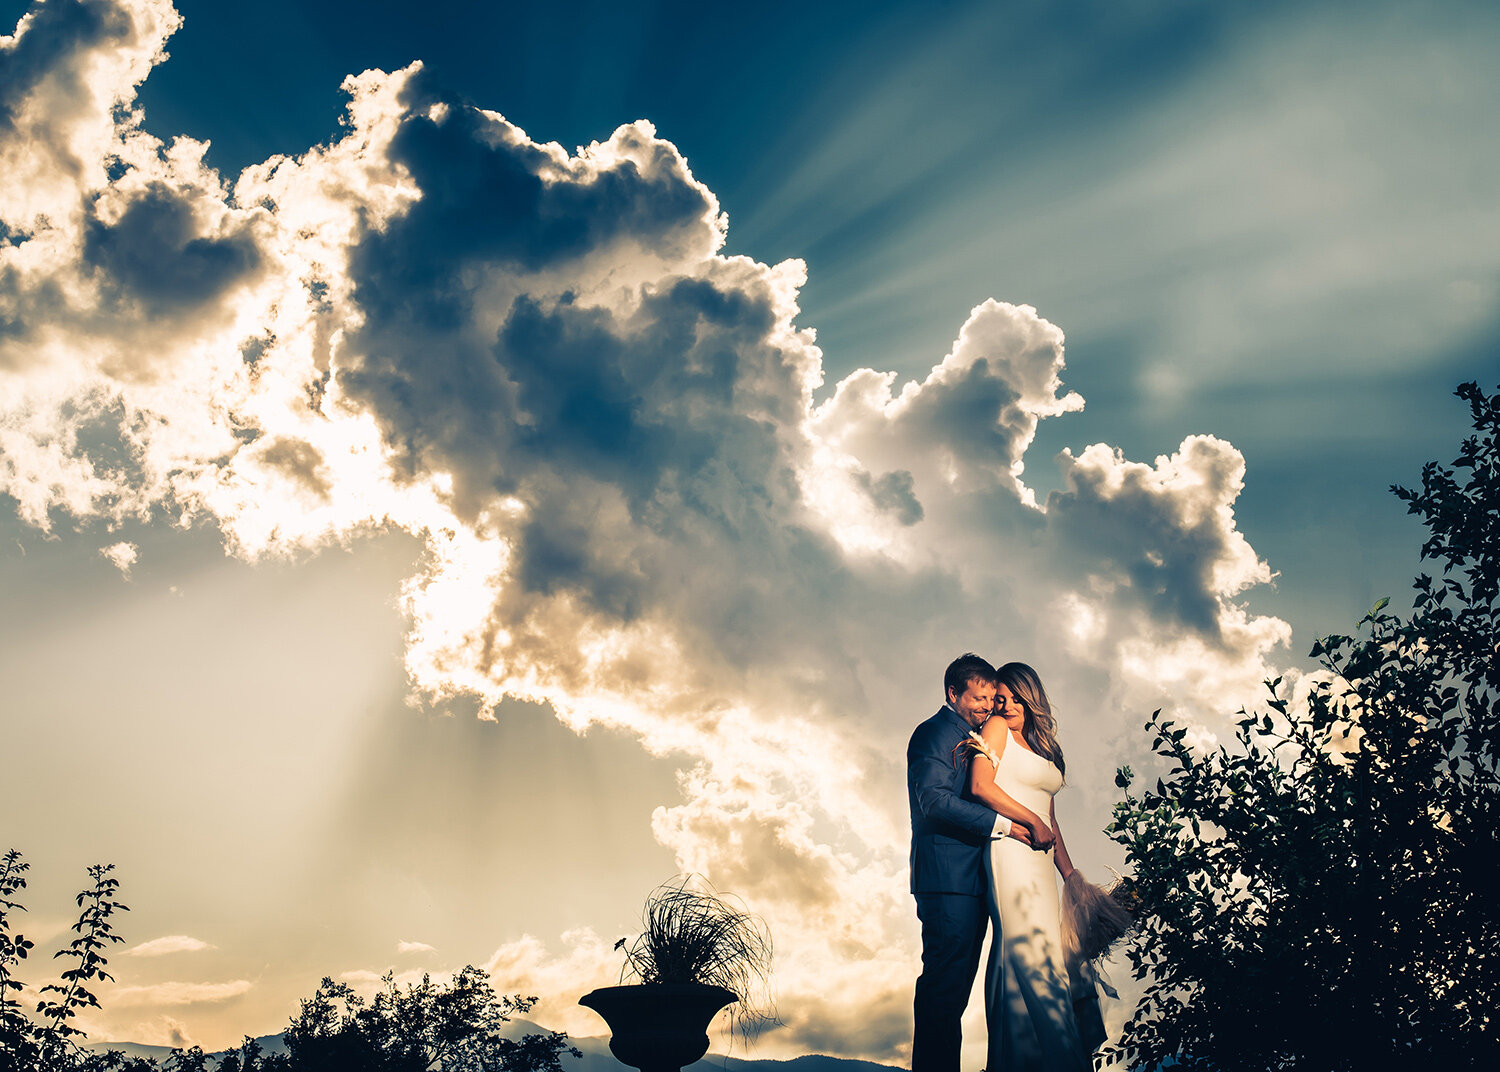 Colorado-wedding-photographer-Steve-Willis.jpg